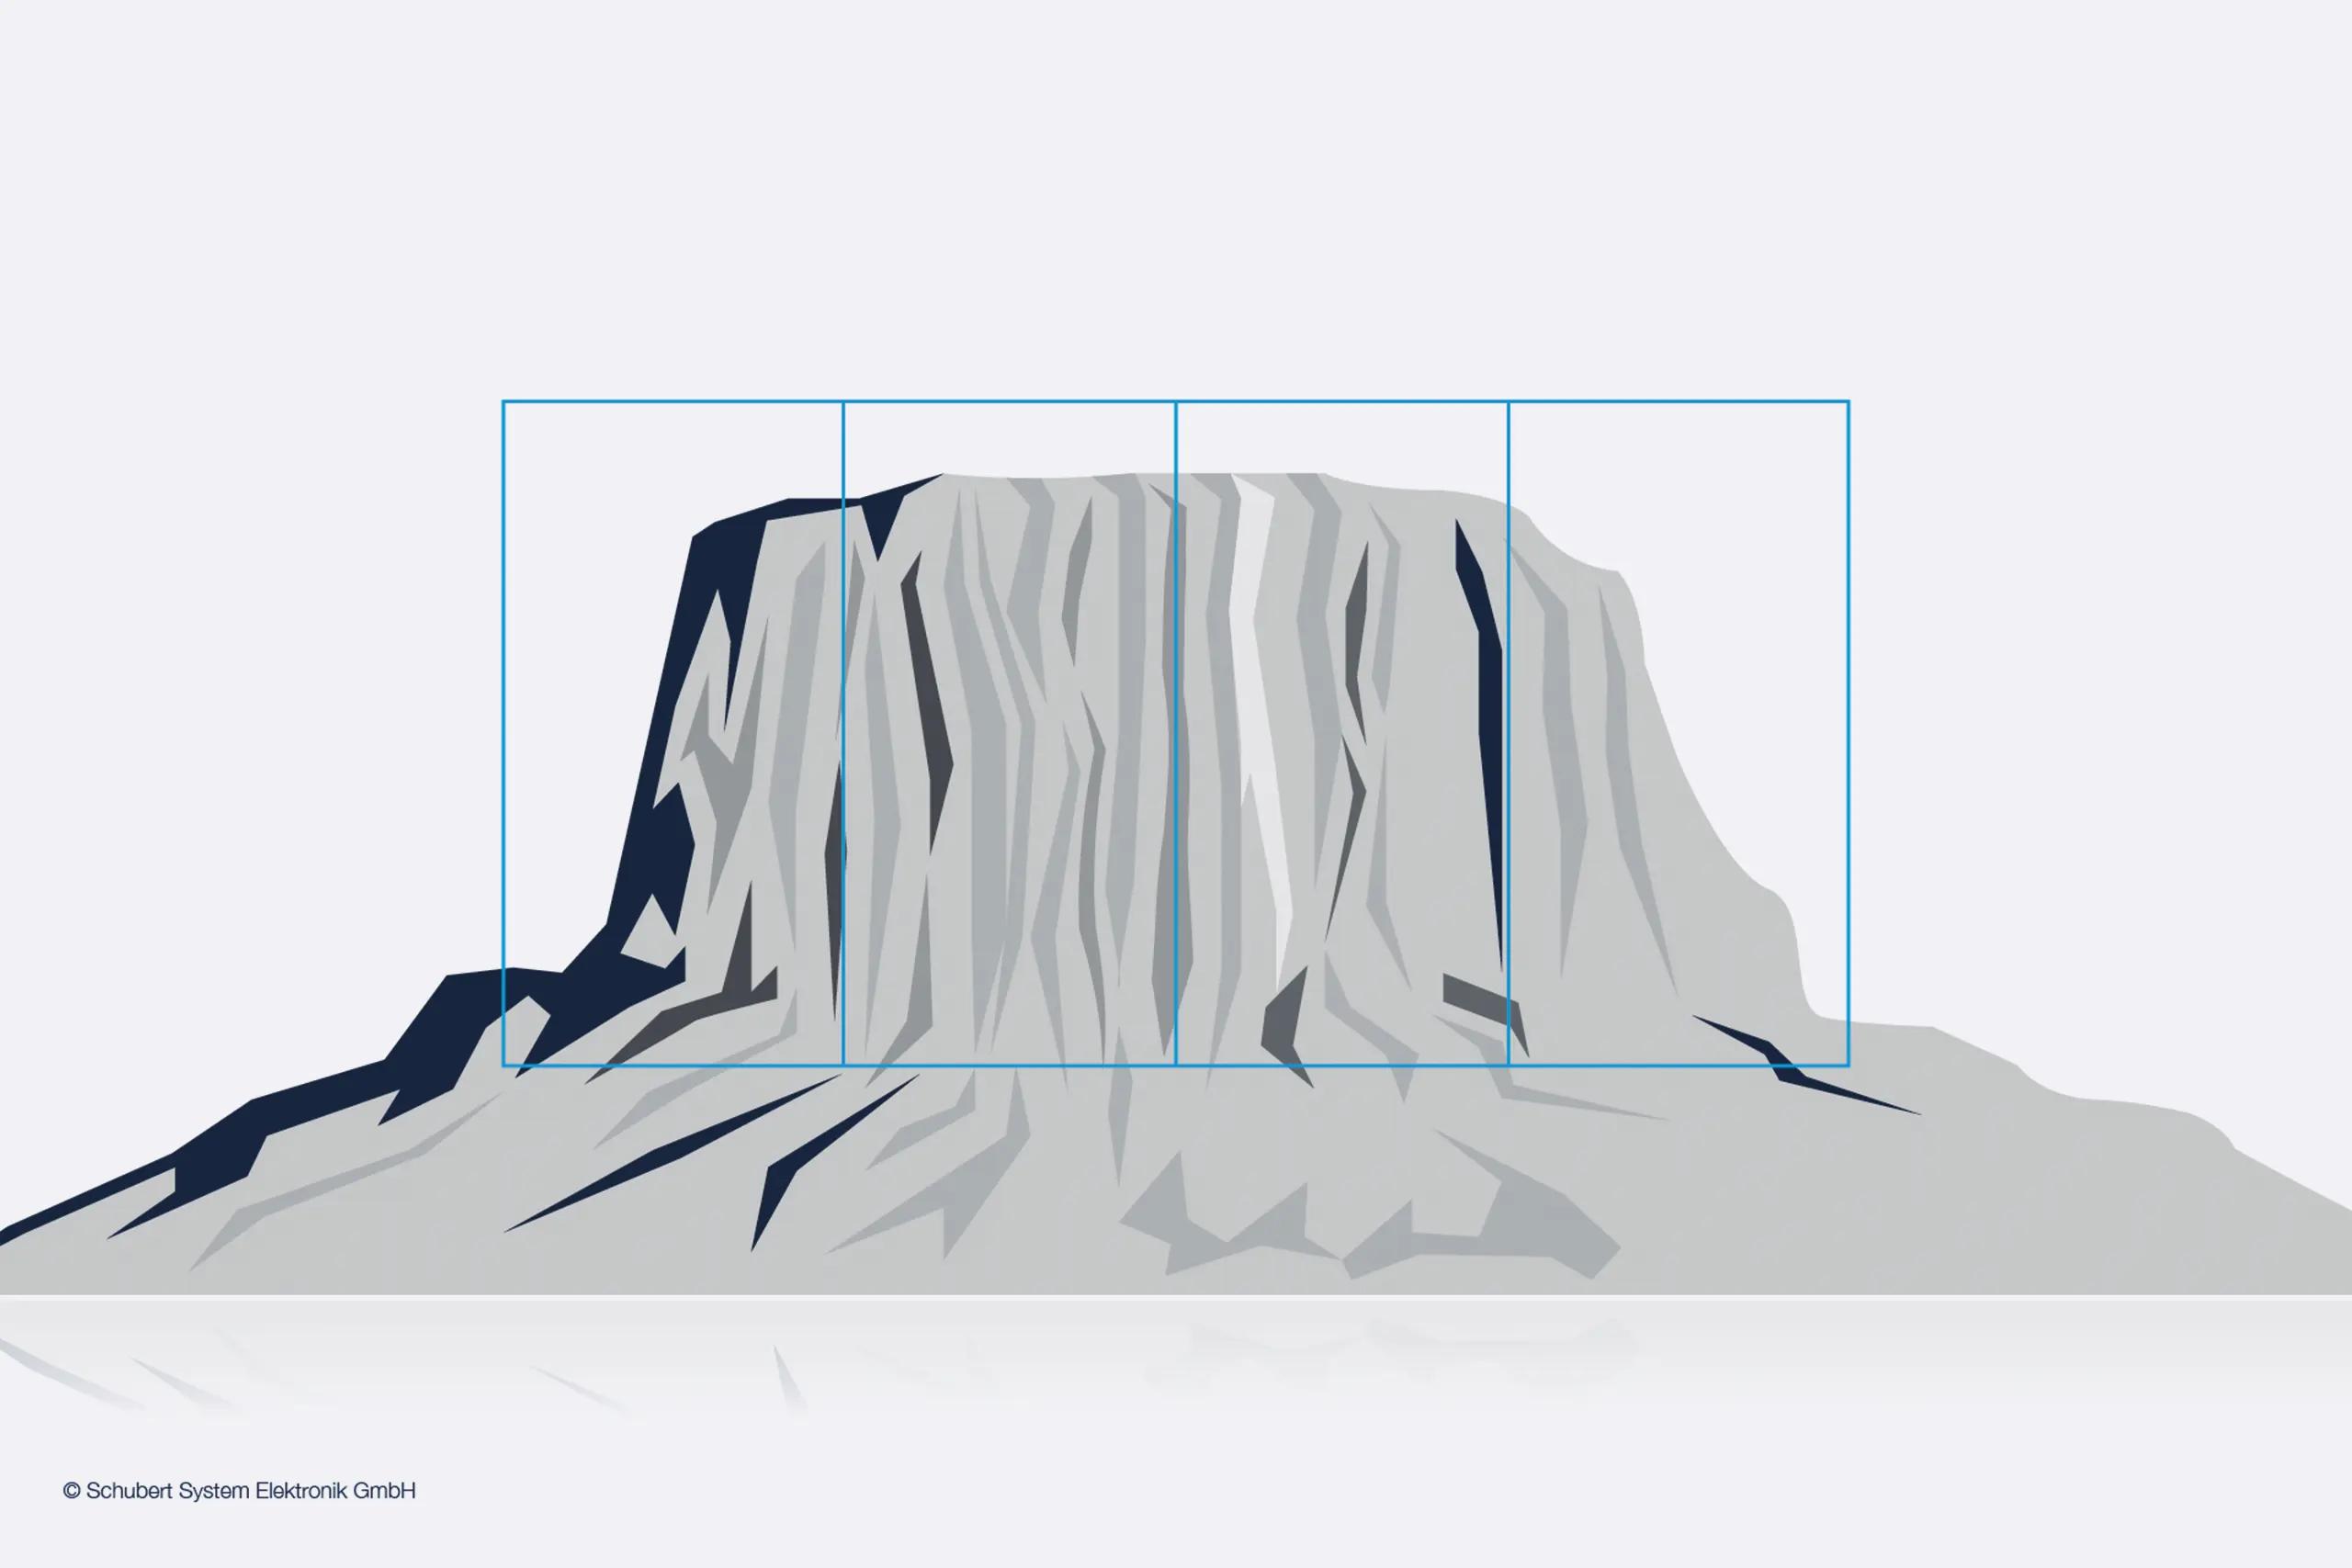 Zu sehen ist die Grafik eines monolitischen System in Form eines Berges, welches zu einem Whitepaper zum Download gehört.